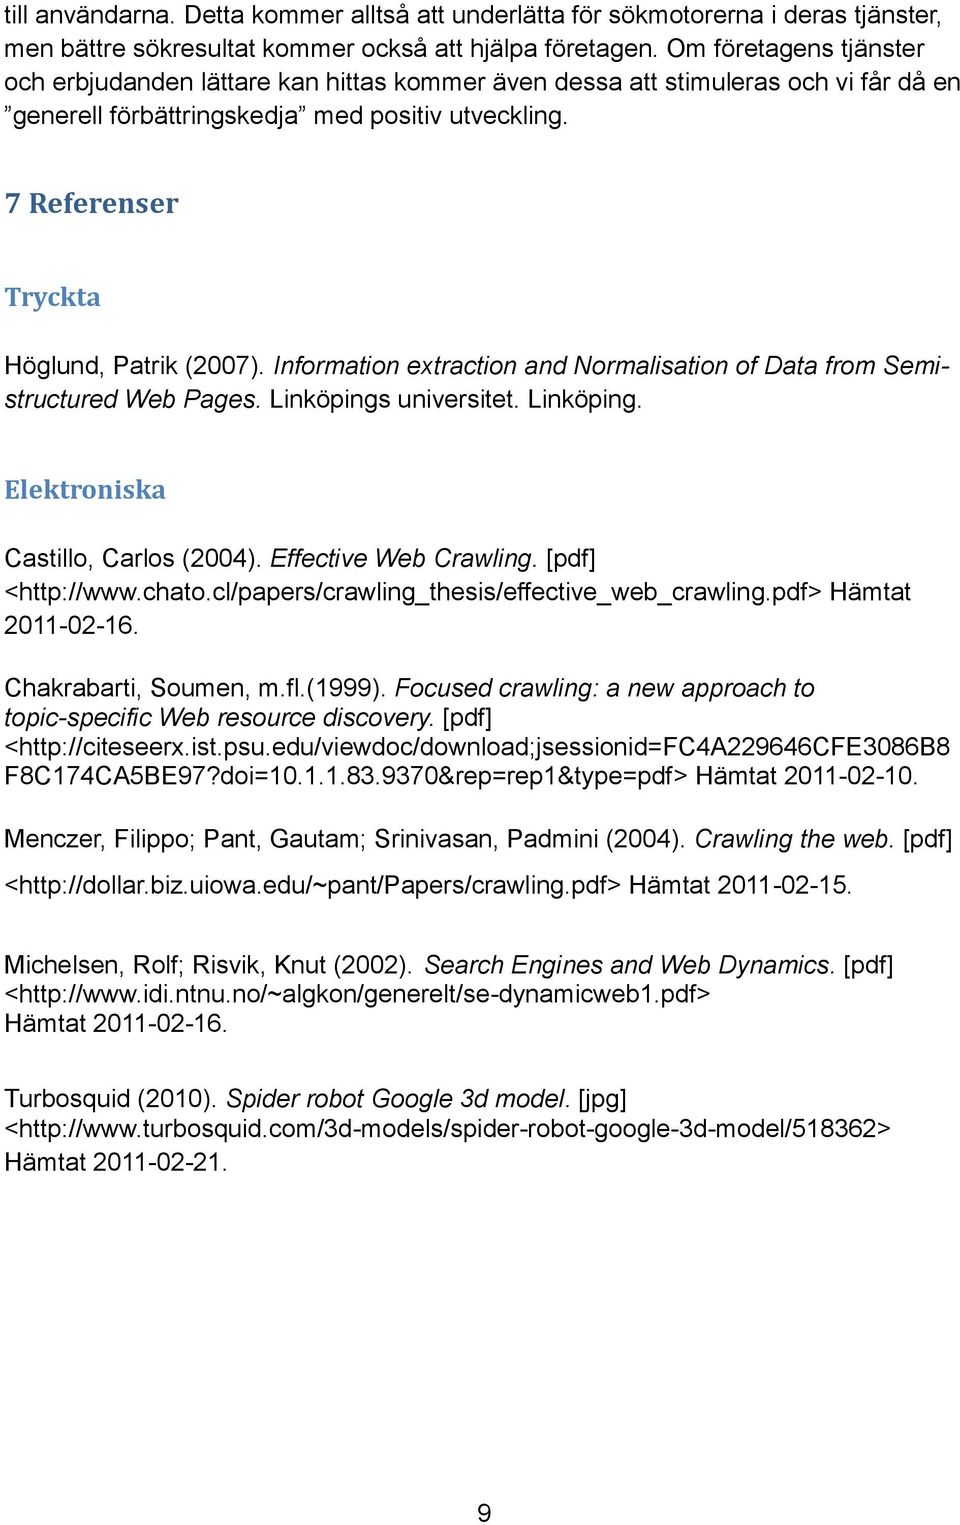 7 Referenser Tryckta Höglund, Patrik (2007). Information extraction and Normalisation of Data from Semistructured Web Pages. Linköpings universitet. Linköping. Elektroniska Castillo, Carlos (2004).